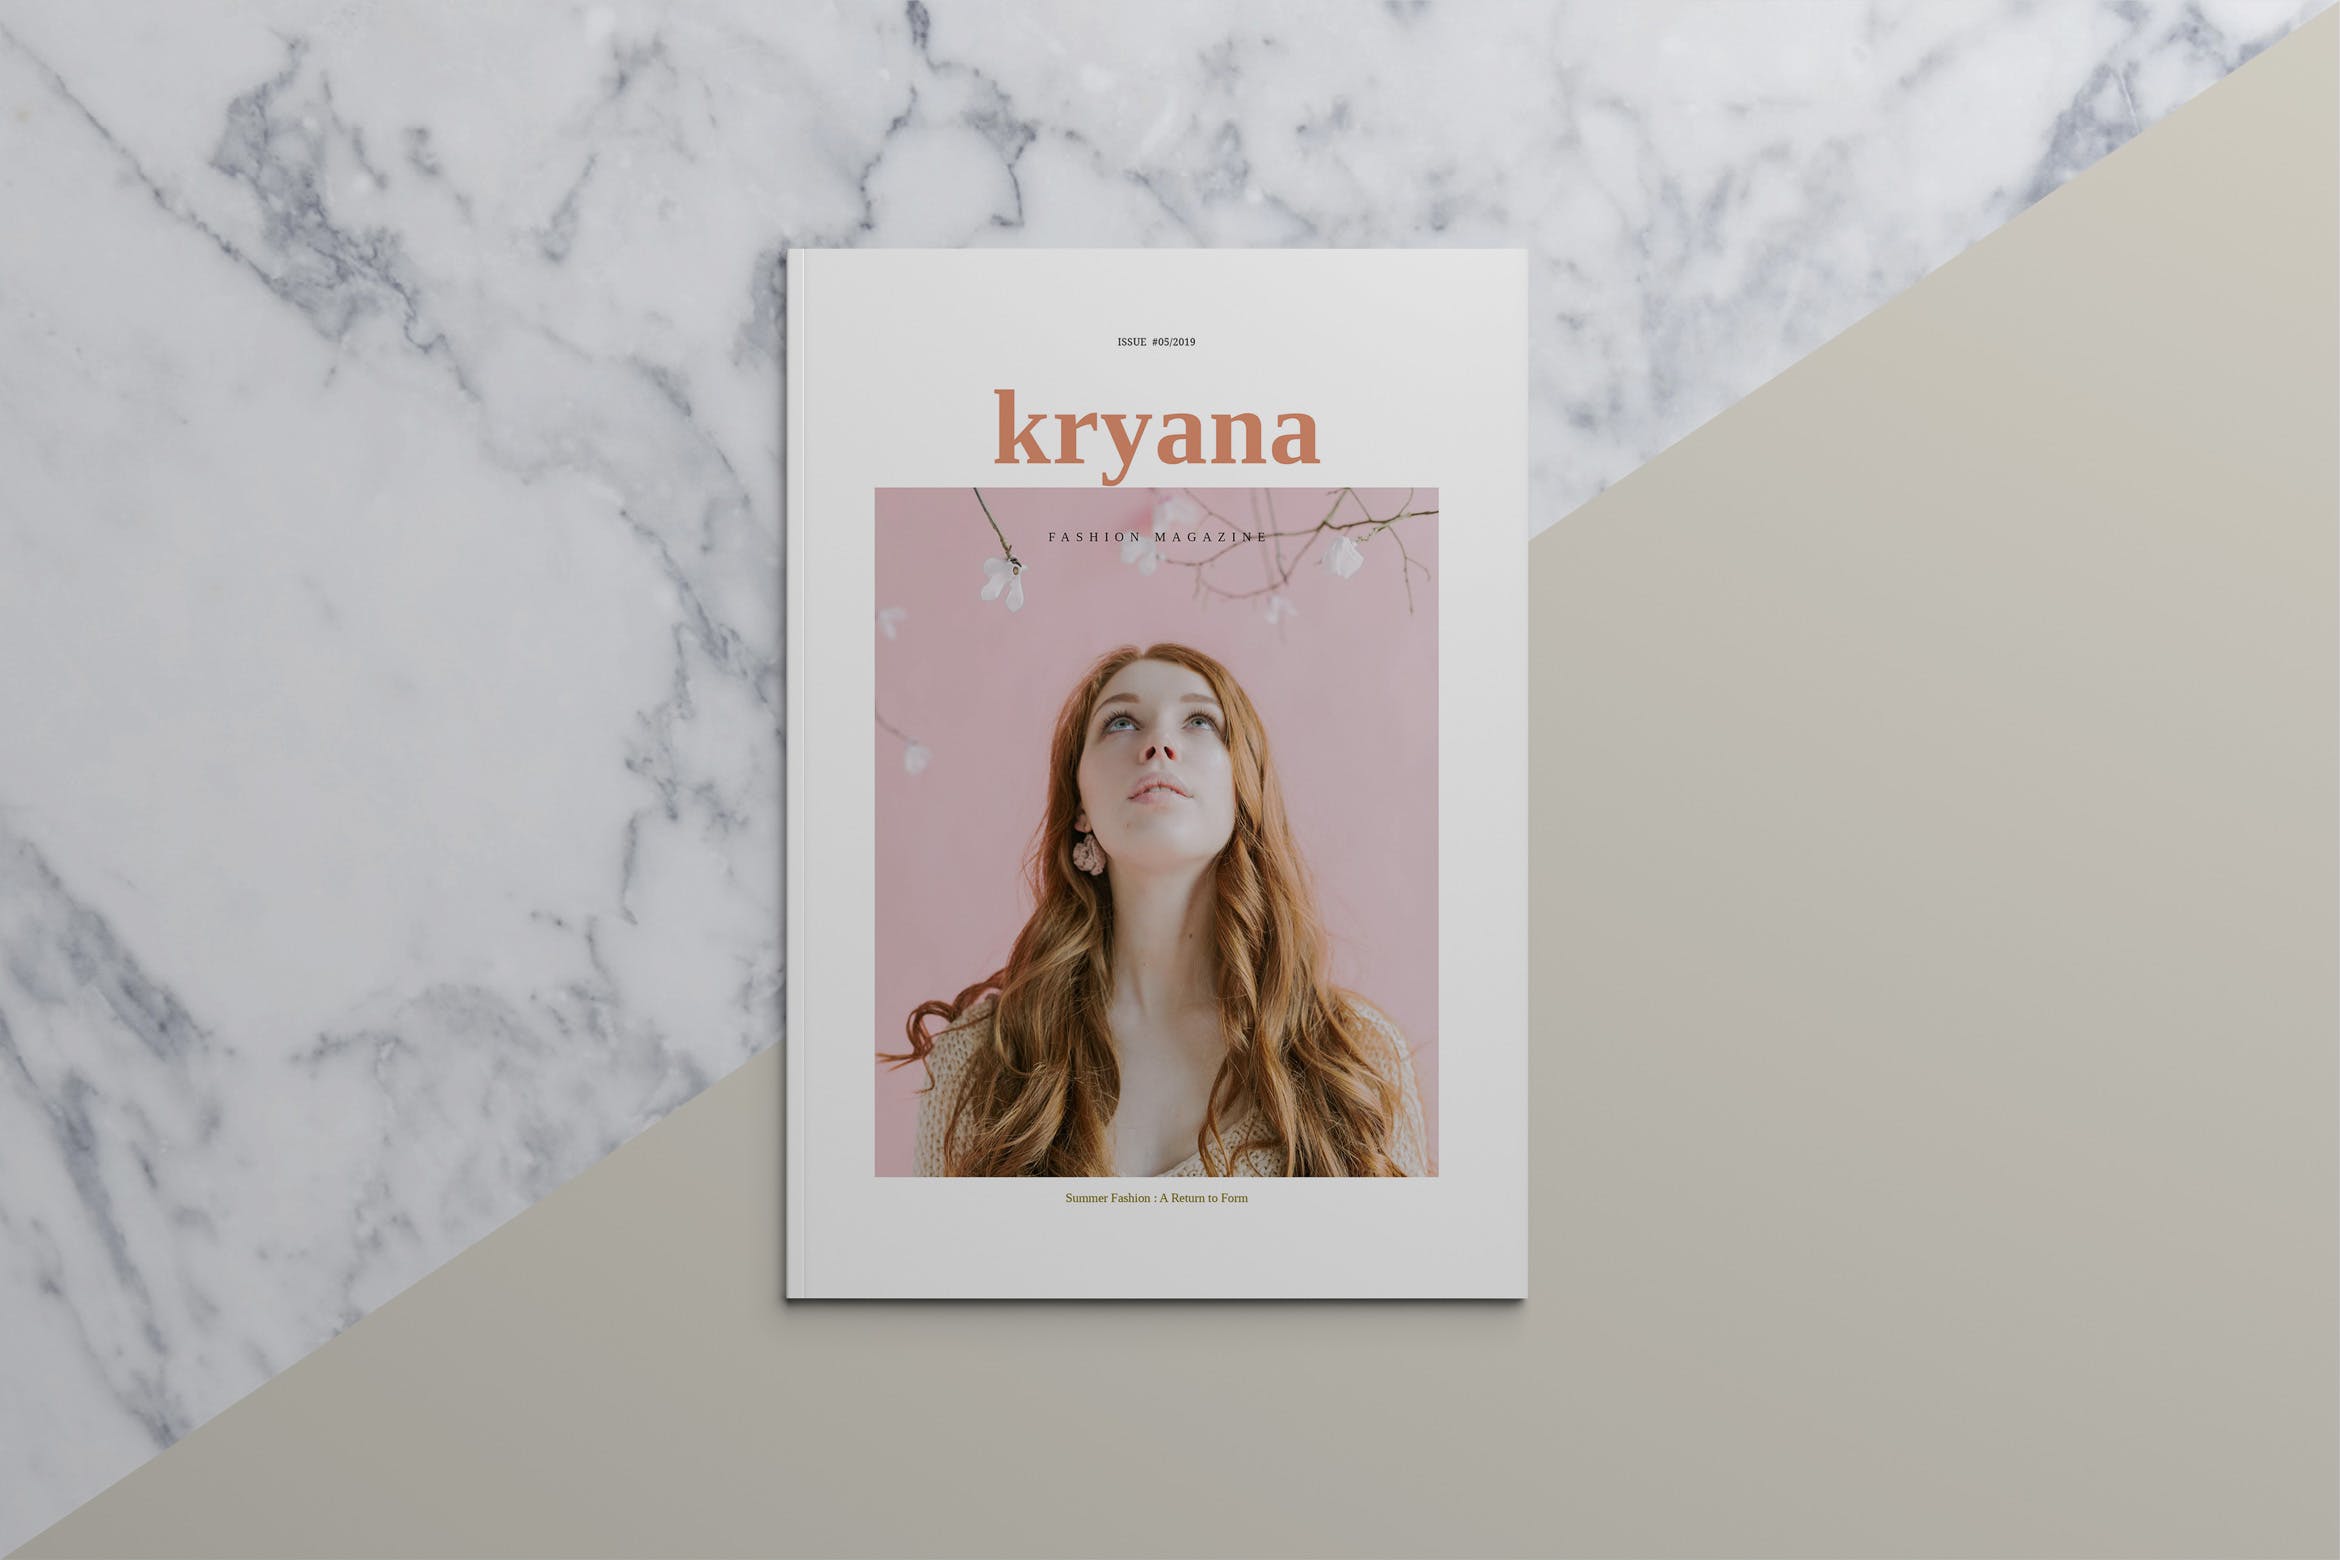 时尚主义北欧风格蚂蚁素材精选杂志设计模板 KRYANA – Fashion Magazine插图